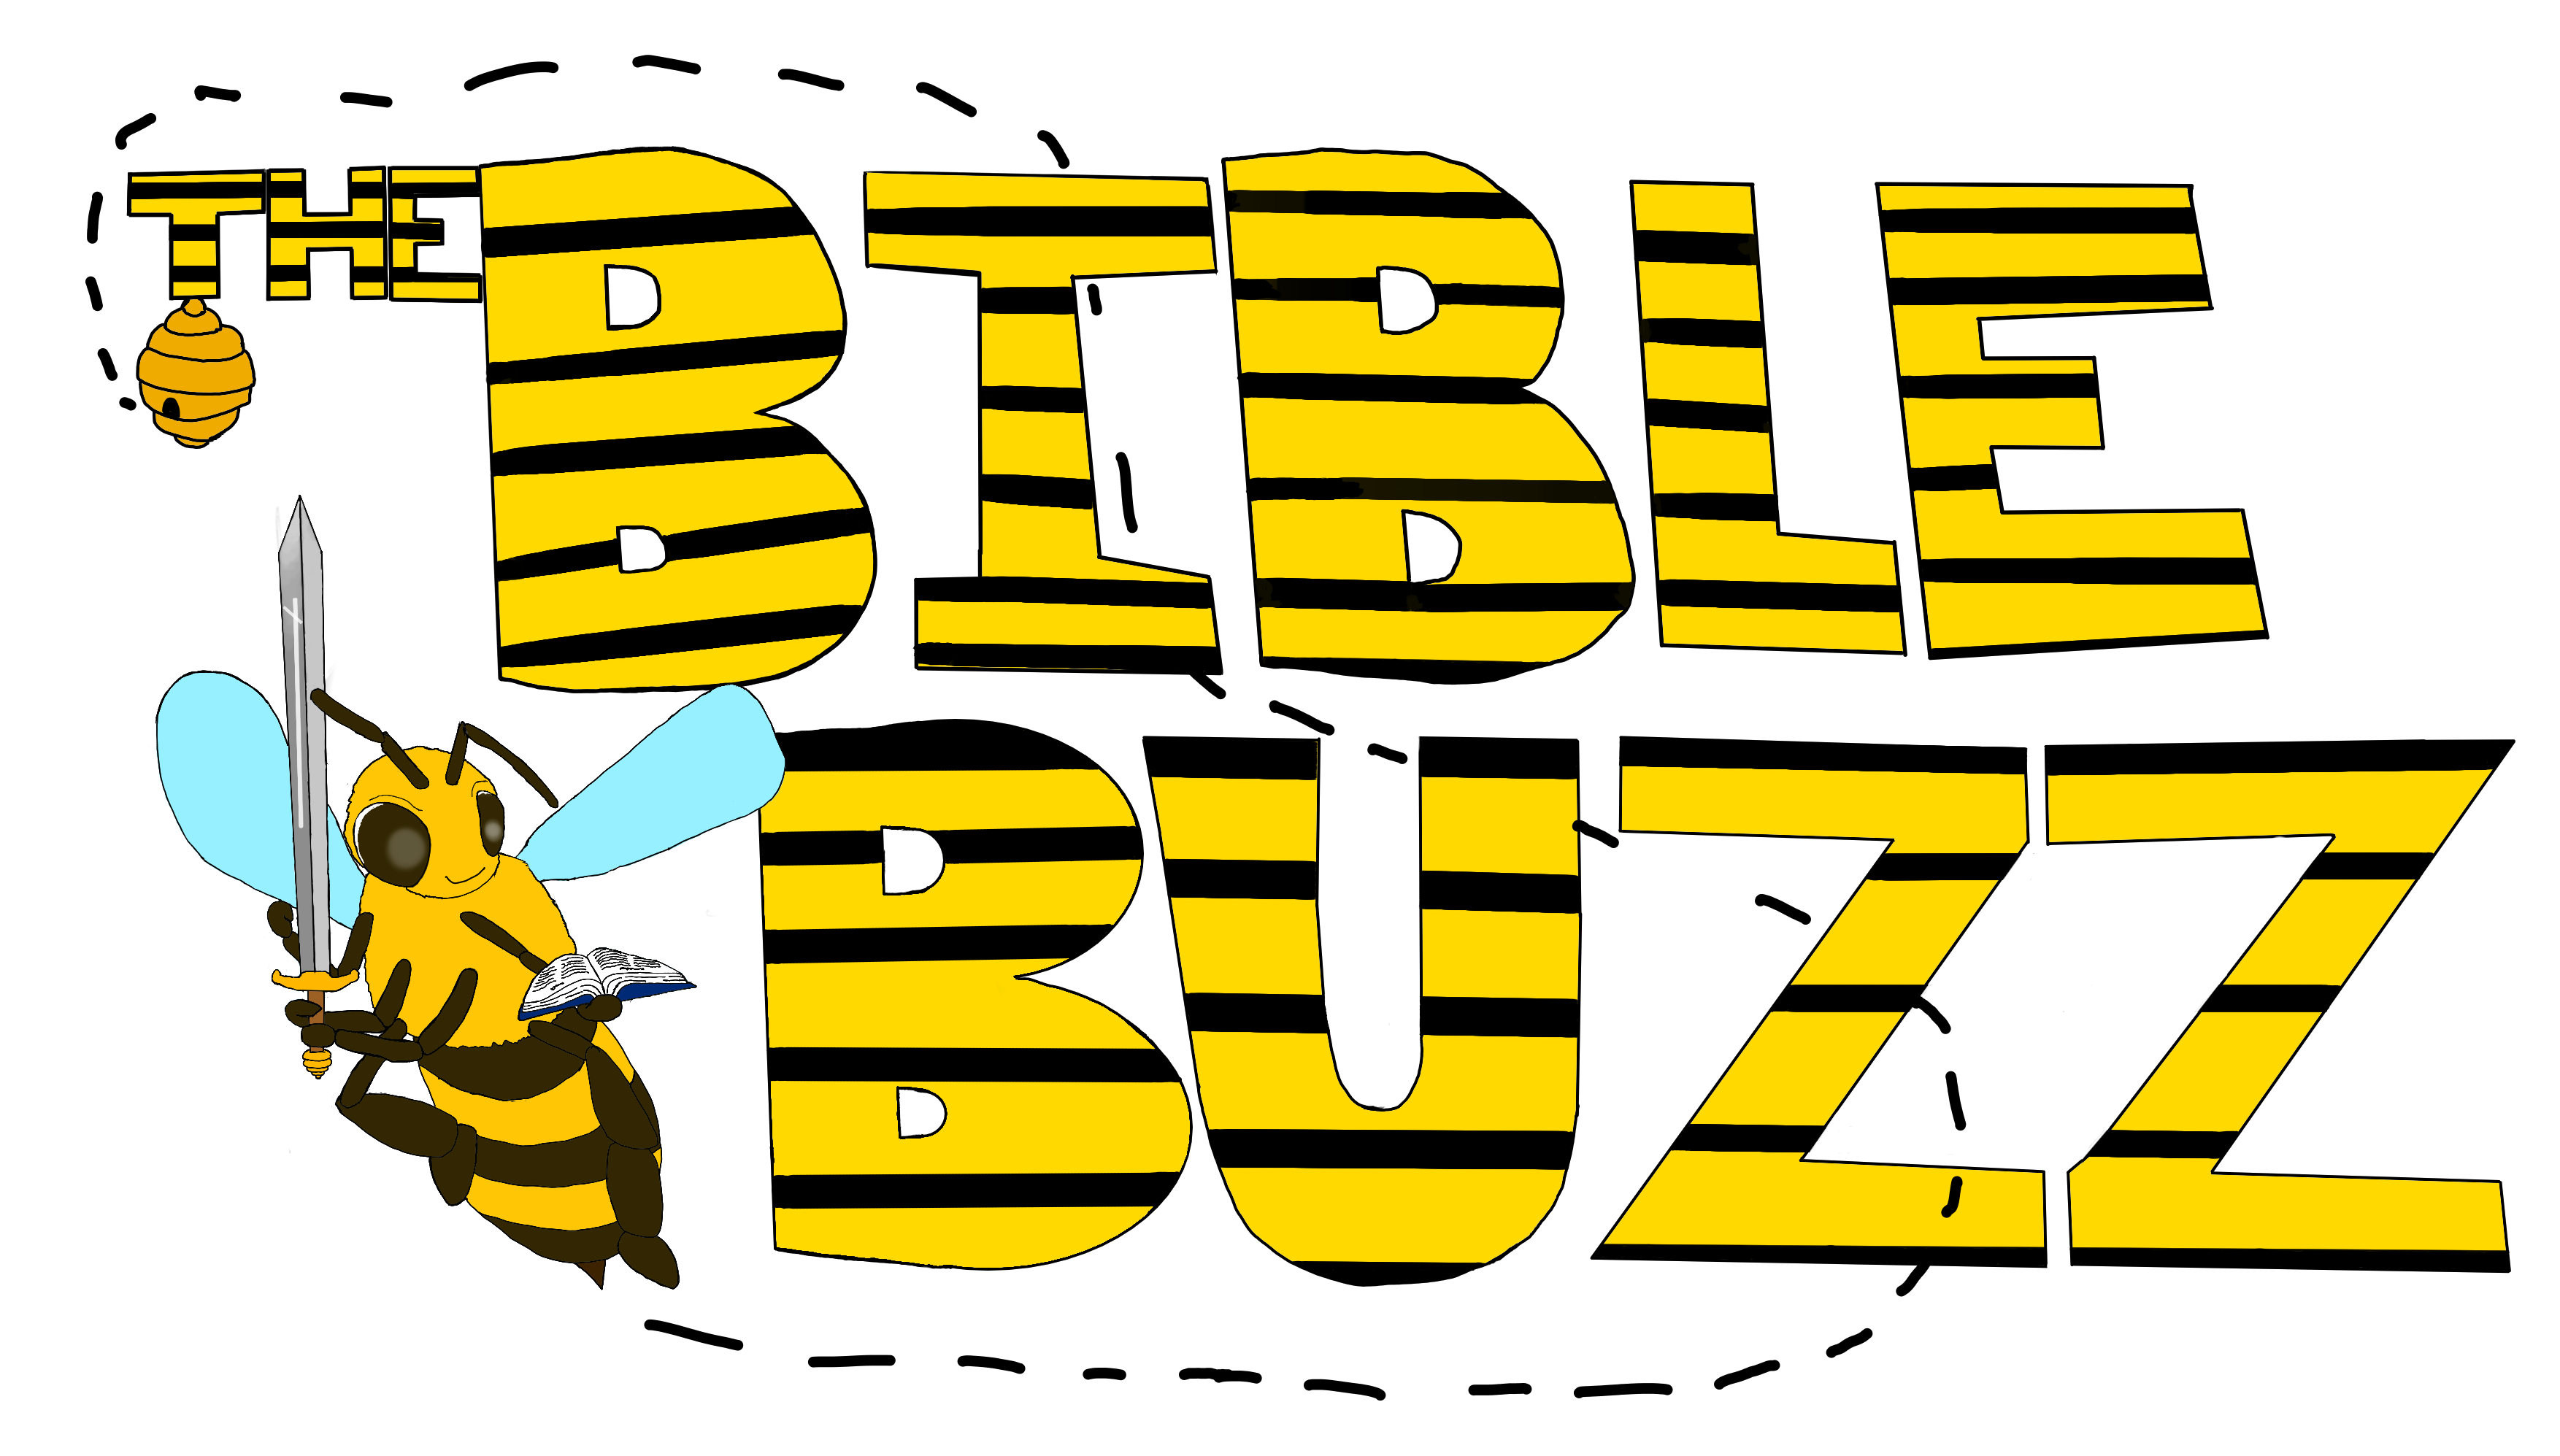 Bible Buzz